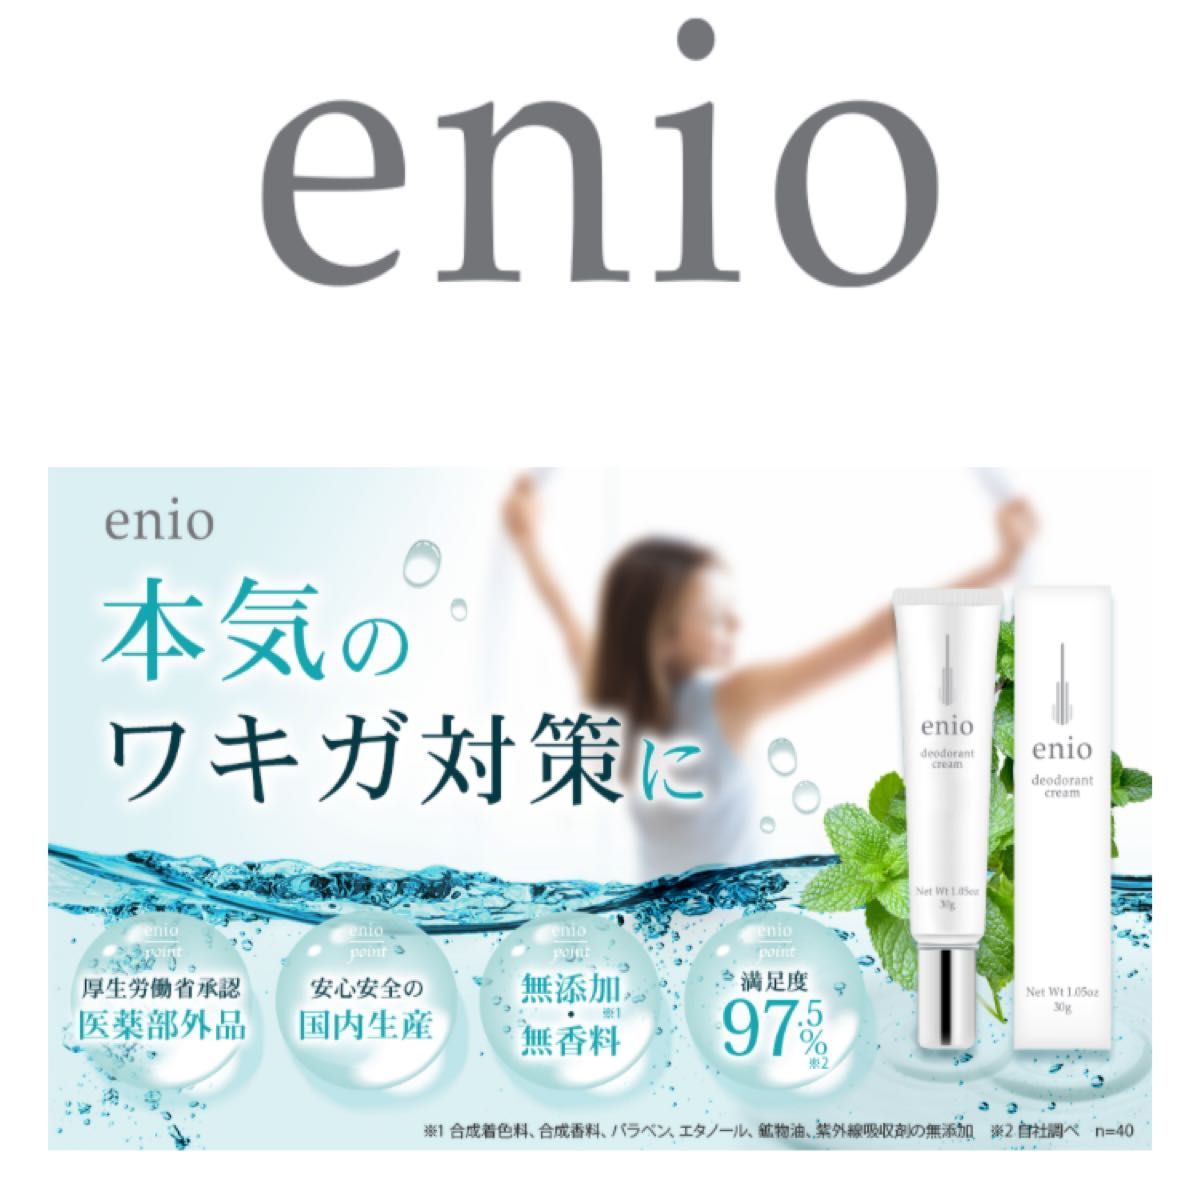 デオドラント クリーム 薬用enio ワキガ 加齢臭 体臭 足臭 対策に9種類の厳選成分配合 日本製 30g